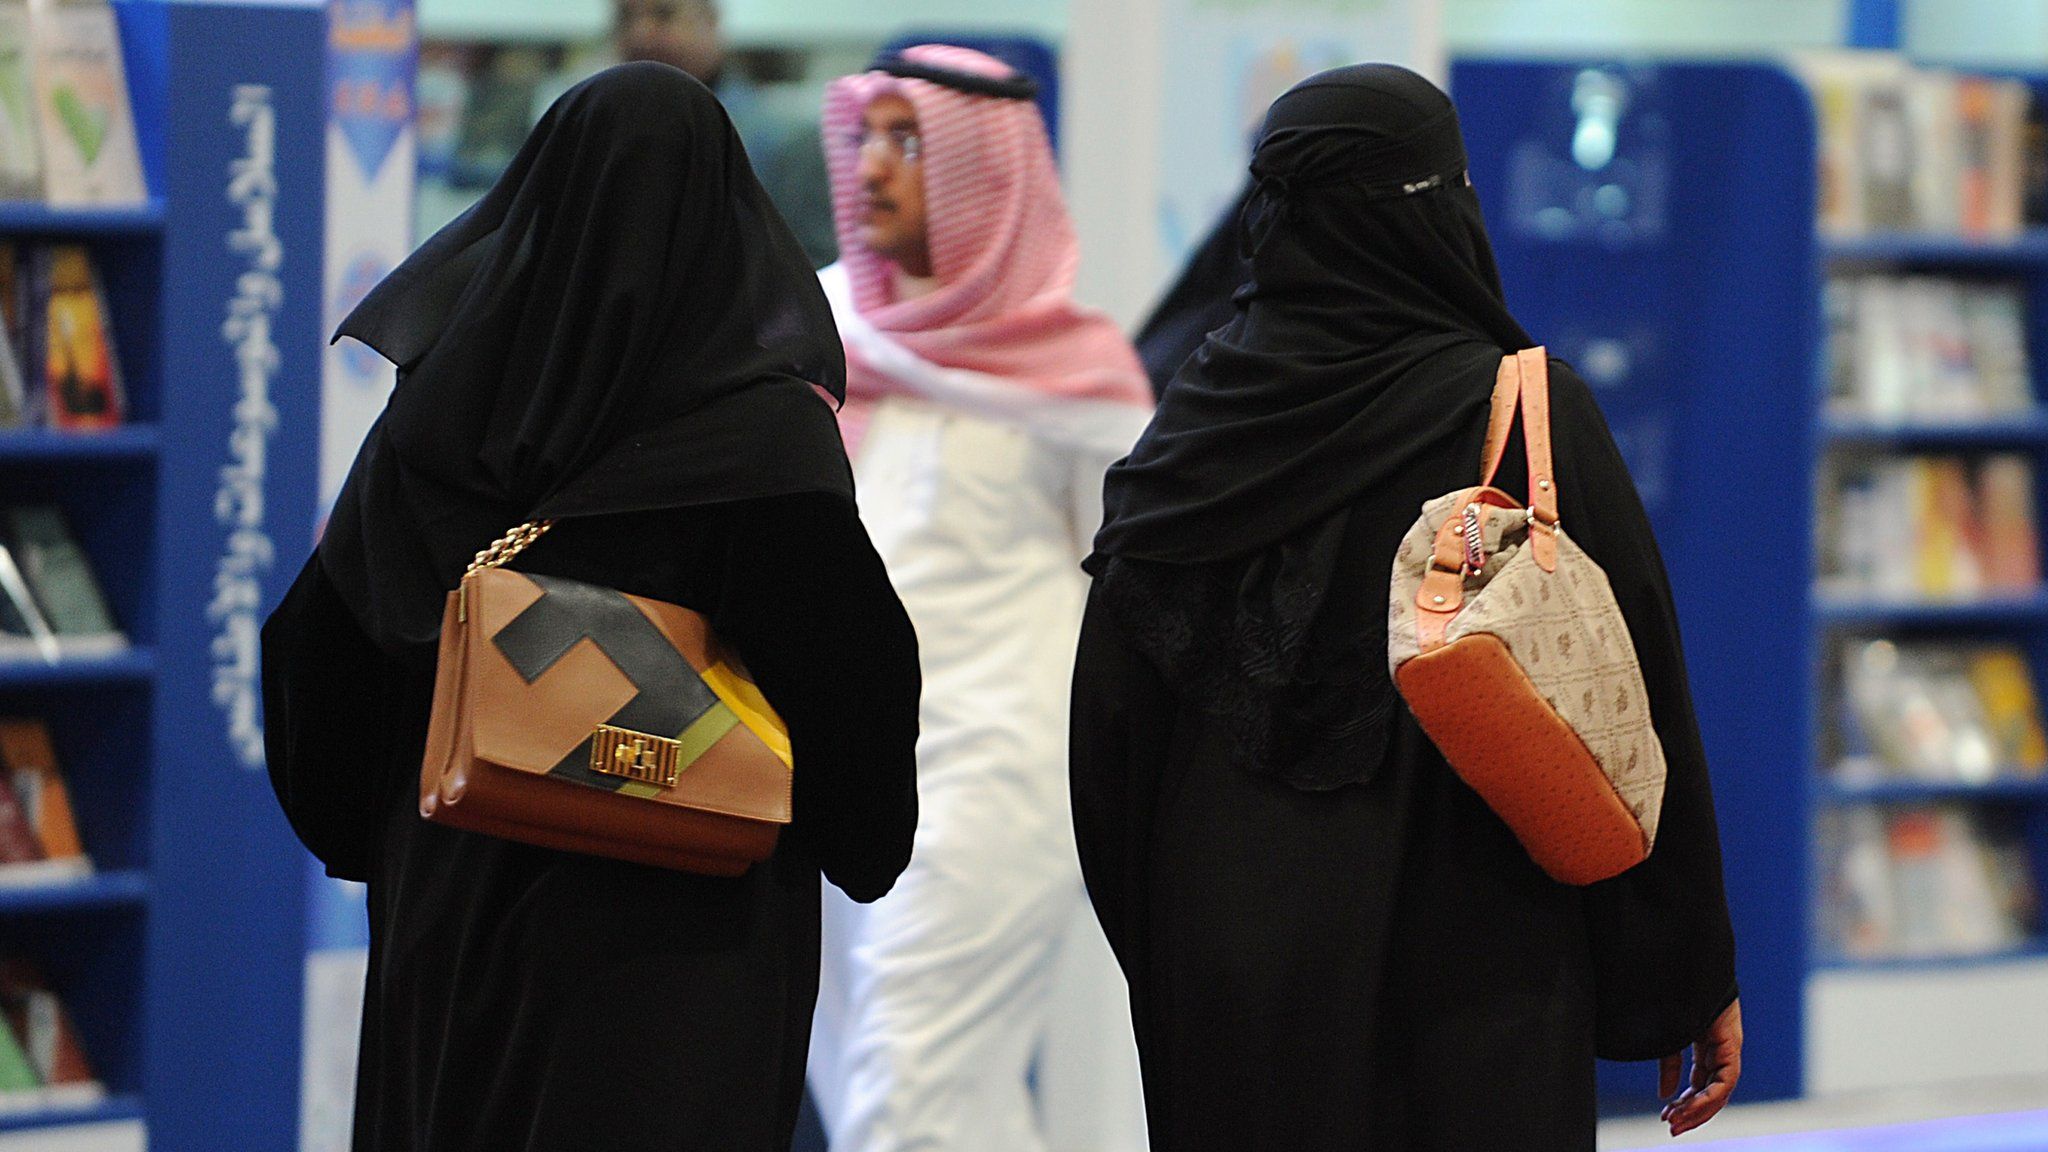 Women and a man at a book fair in Riyadh, Saudi Arabia (4 March 2014)